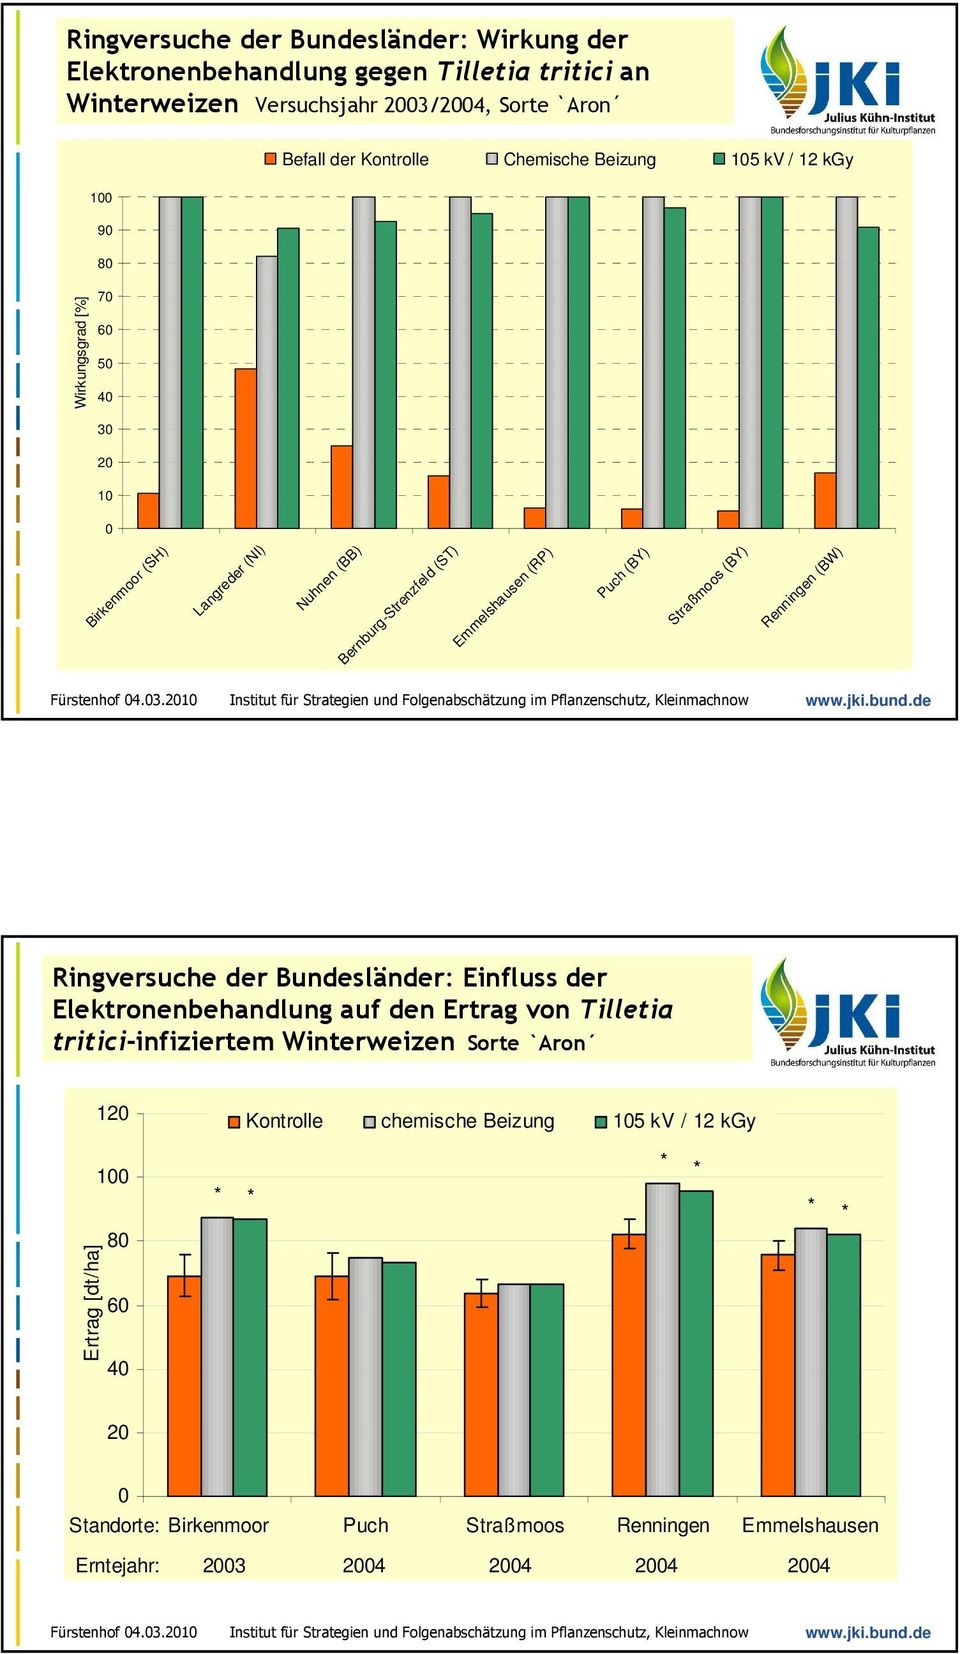 (BY) Straßmoos (BY) Renningen (BW) Ringversuche der Bundesländer: Einfluss der Elektronenbehandlung auf den Ertrag von Tilletia tritici-infiziertem Winterweizen